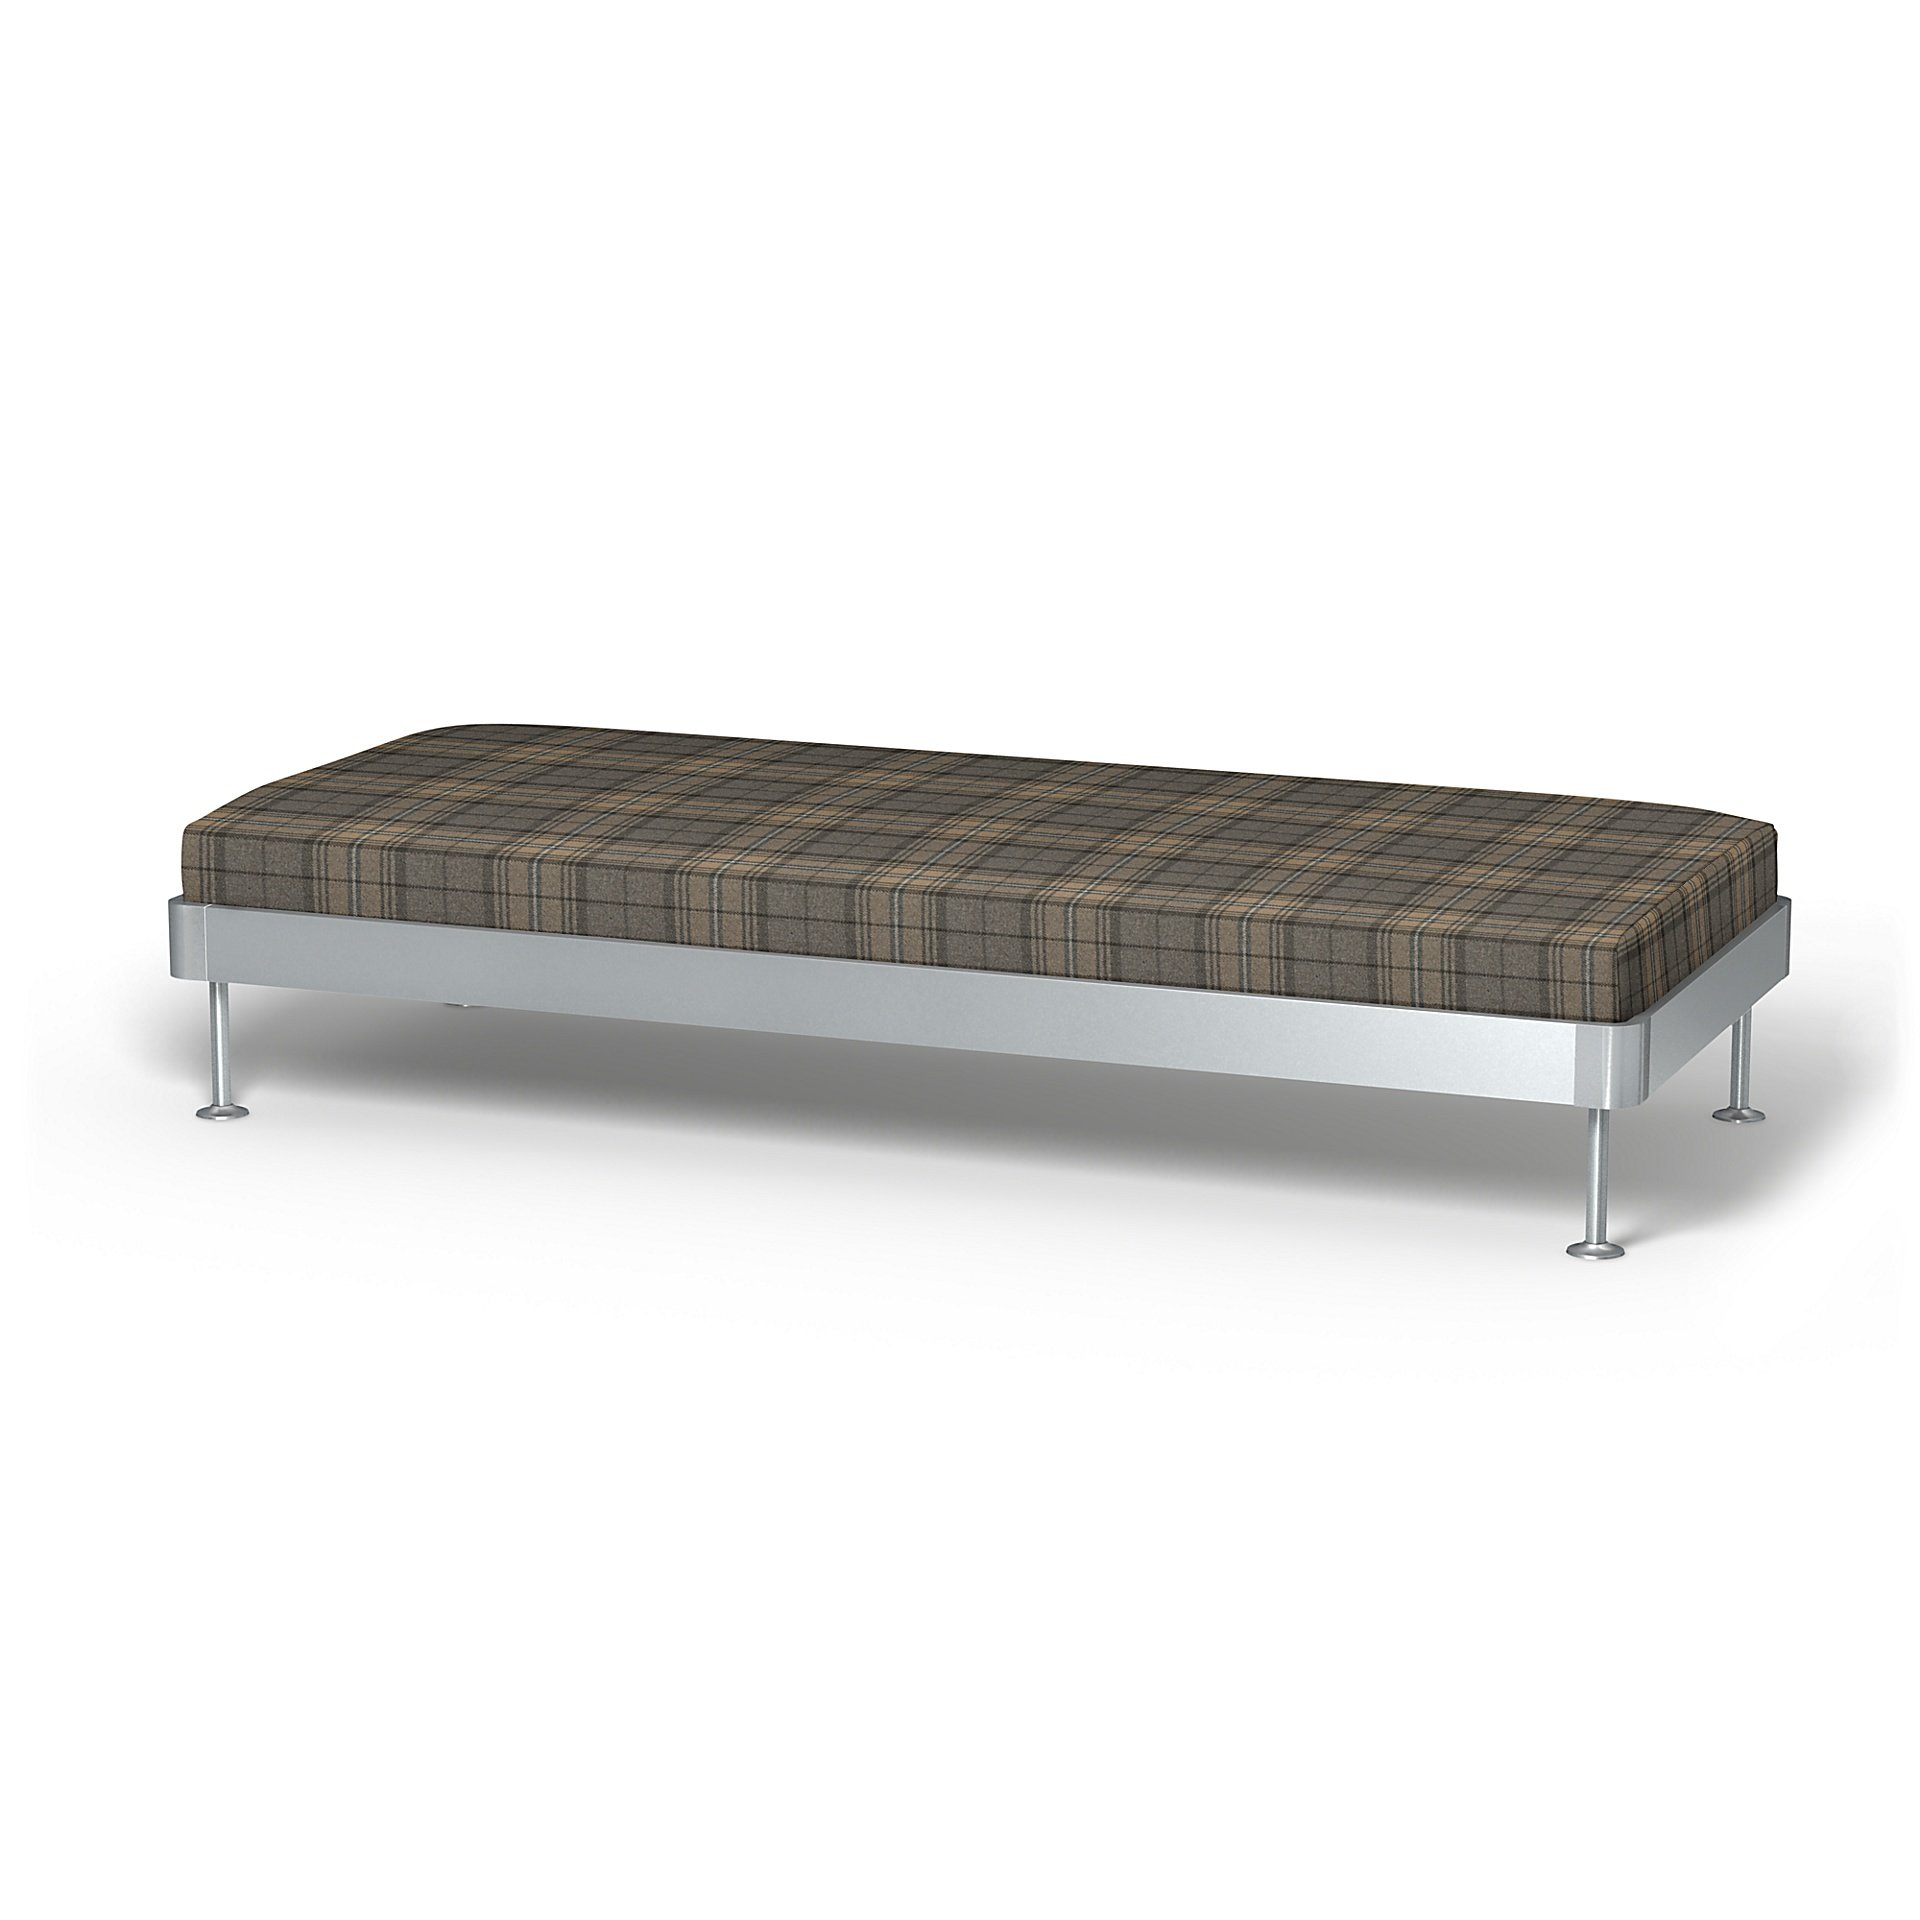 IKEA - Delaktig 3 Seat Platform Cover, Bark Brown, Wool - Bemz